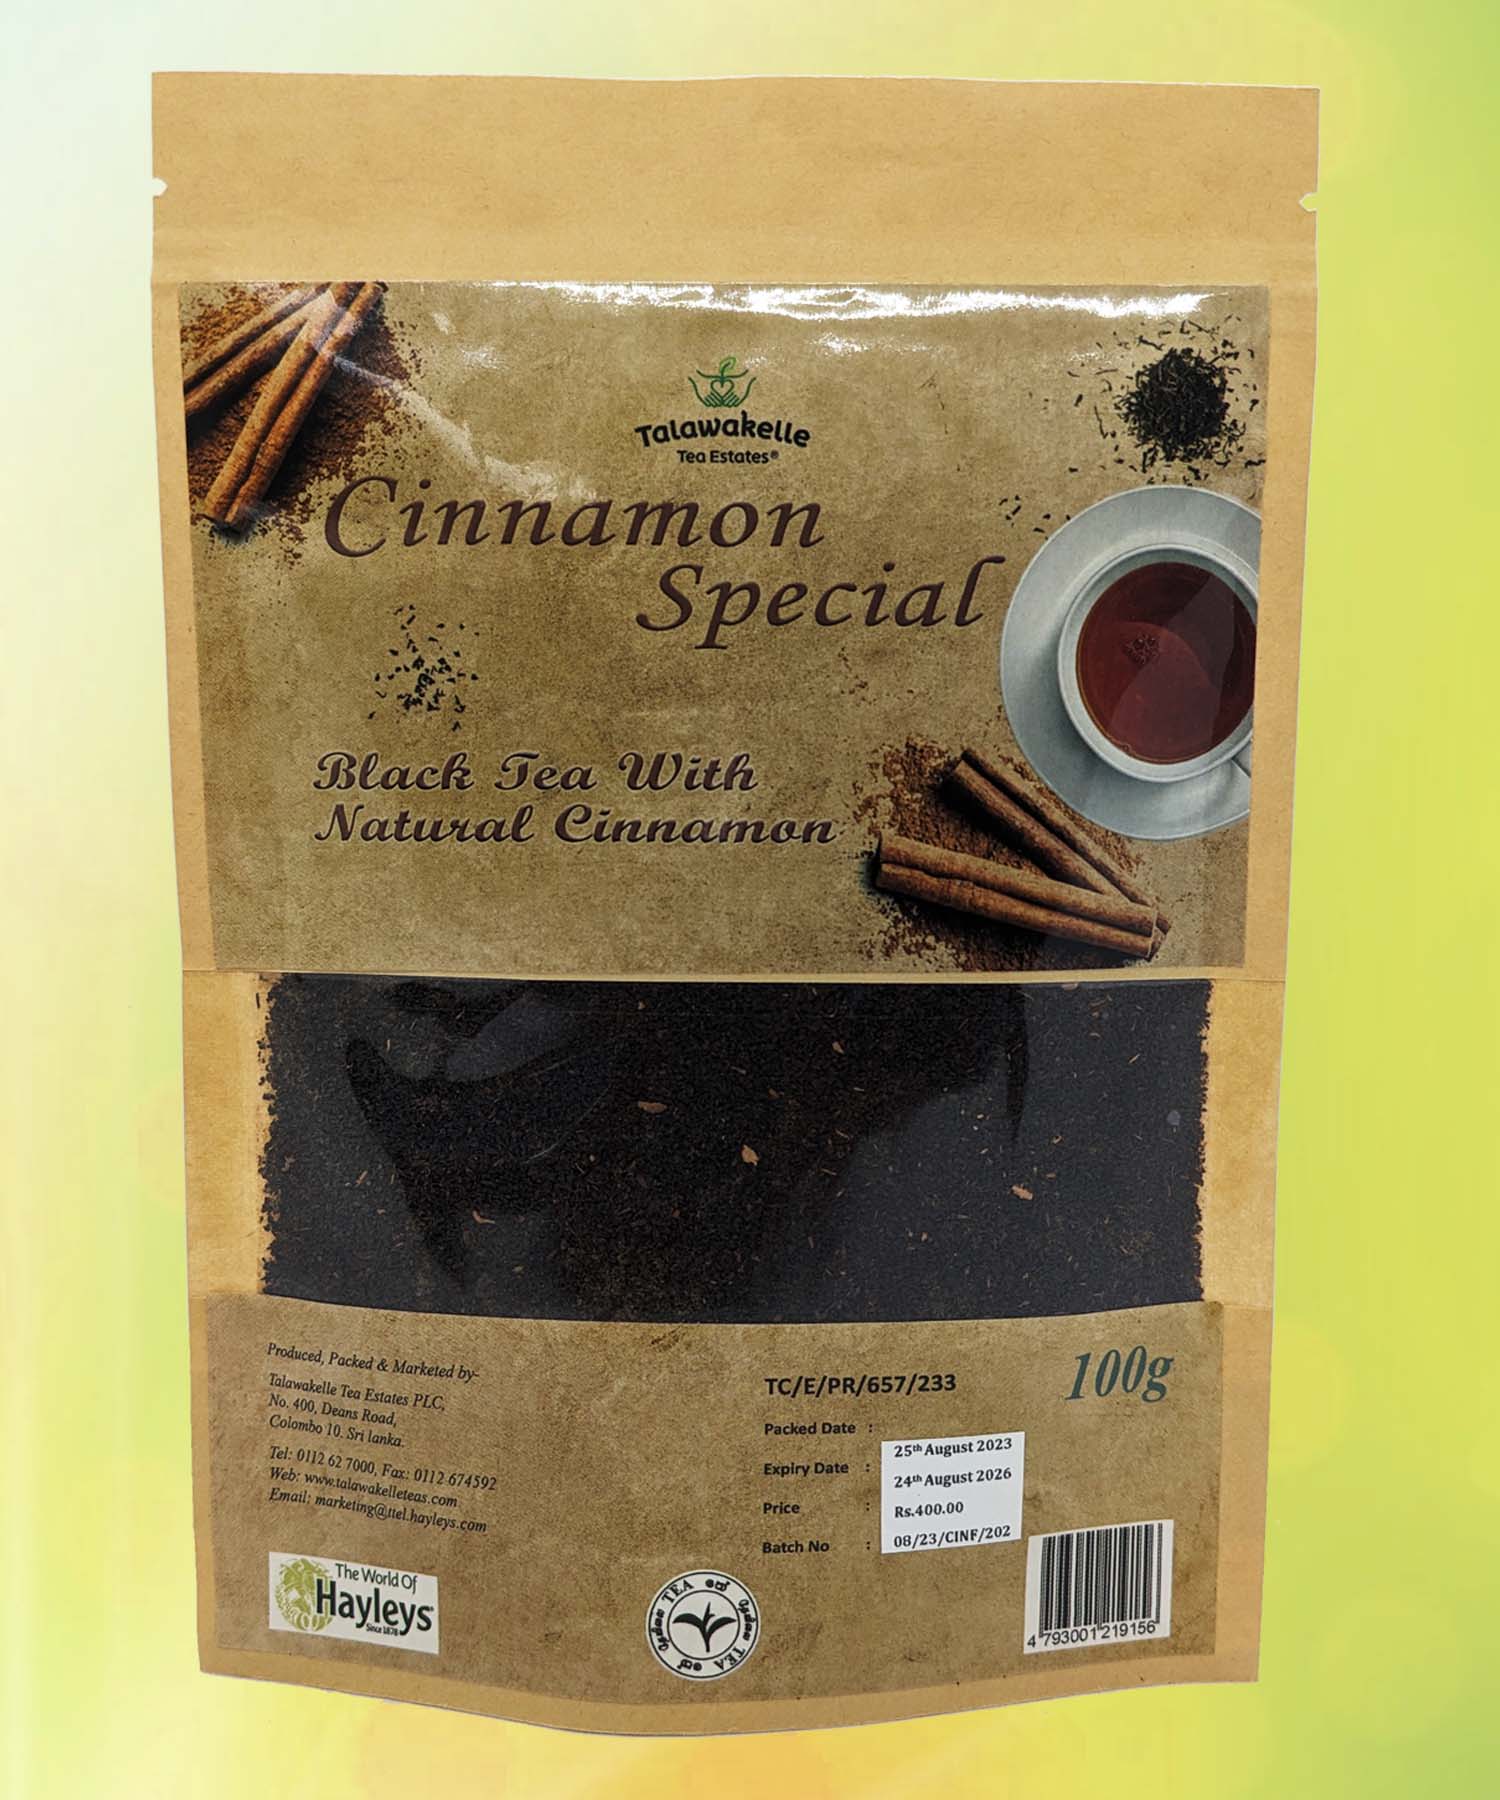 Cinnamonsp